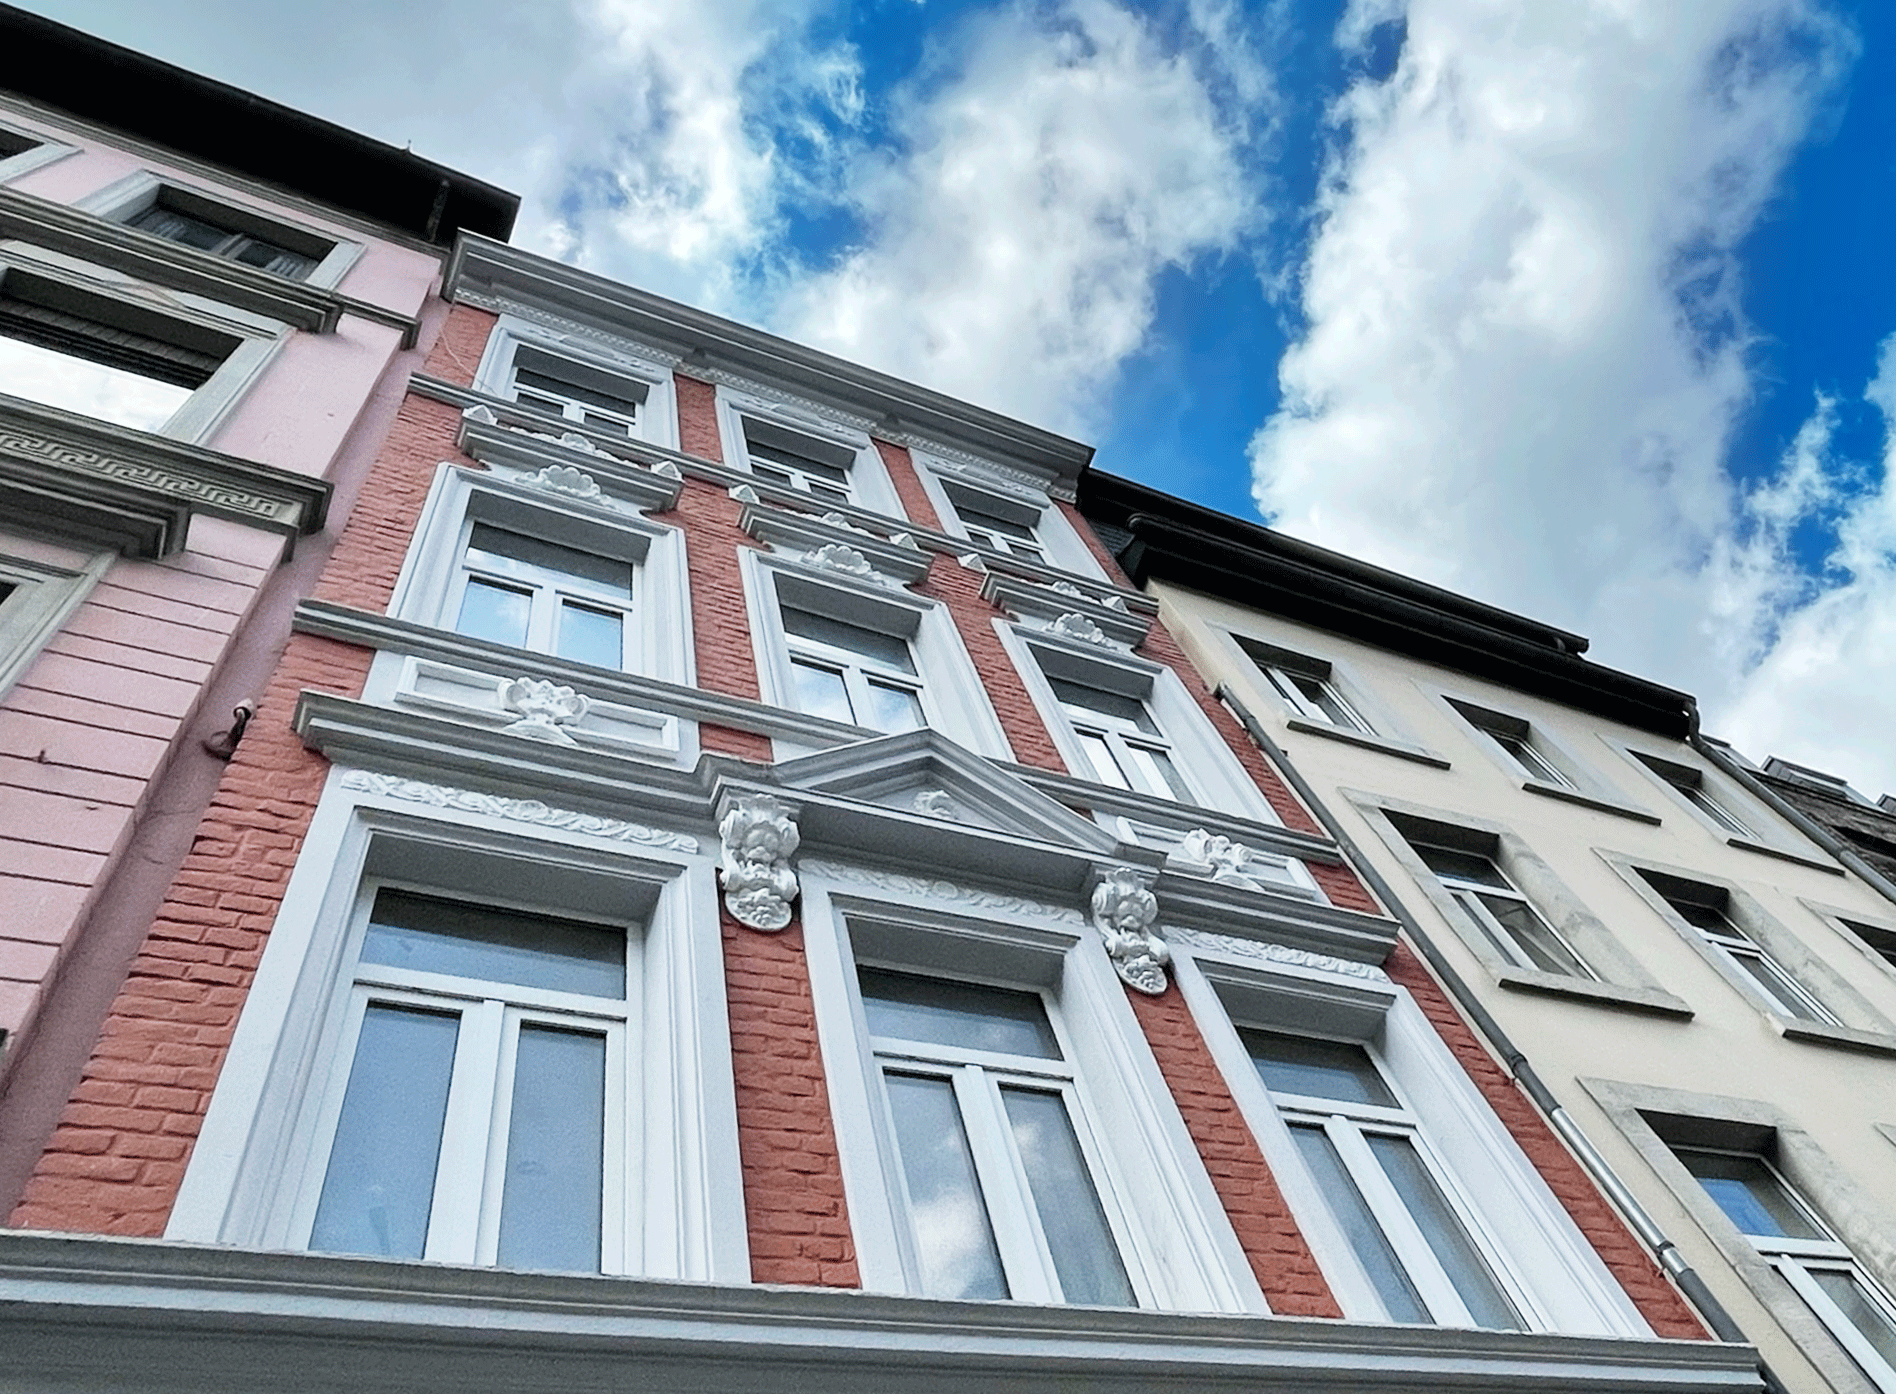 Wohnung in Aachen in der Jakobstraße zu vermieten über Koch Immobilien